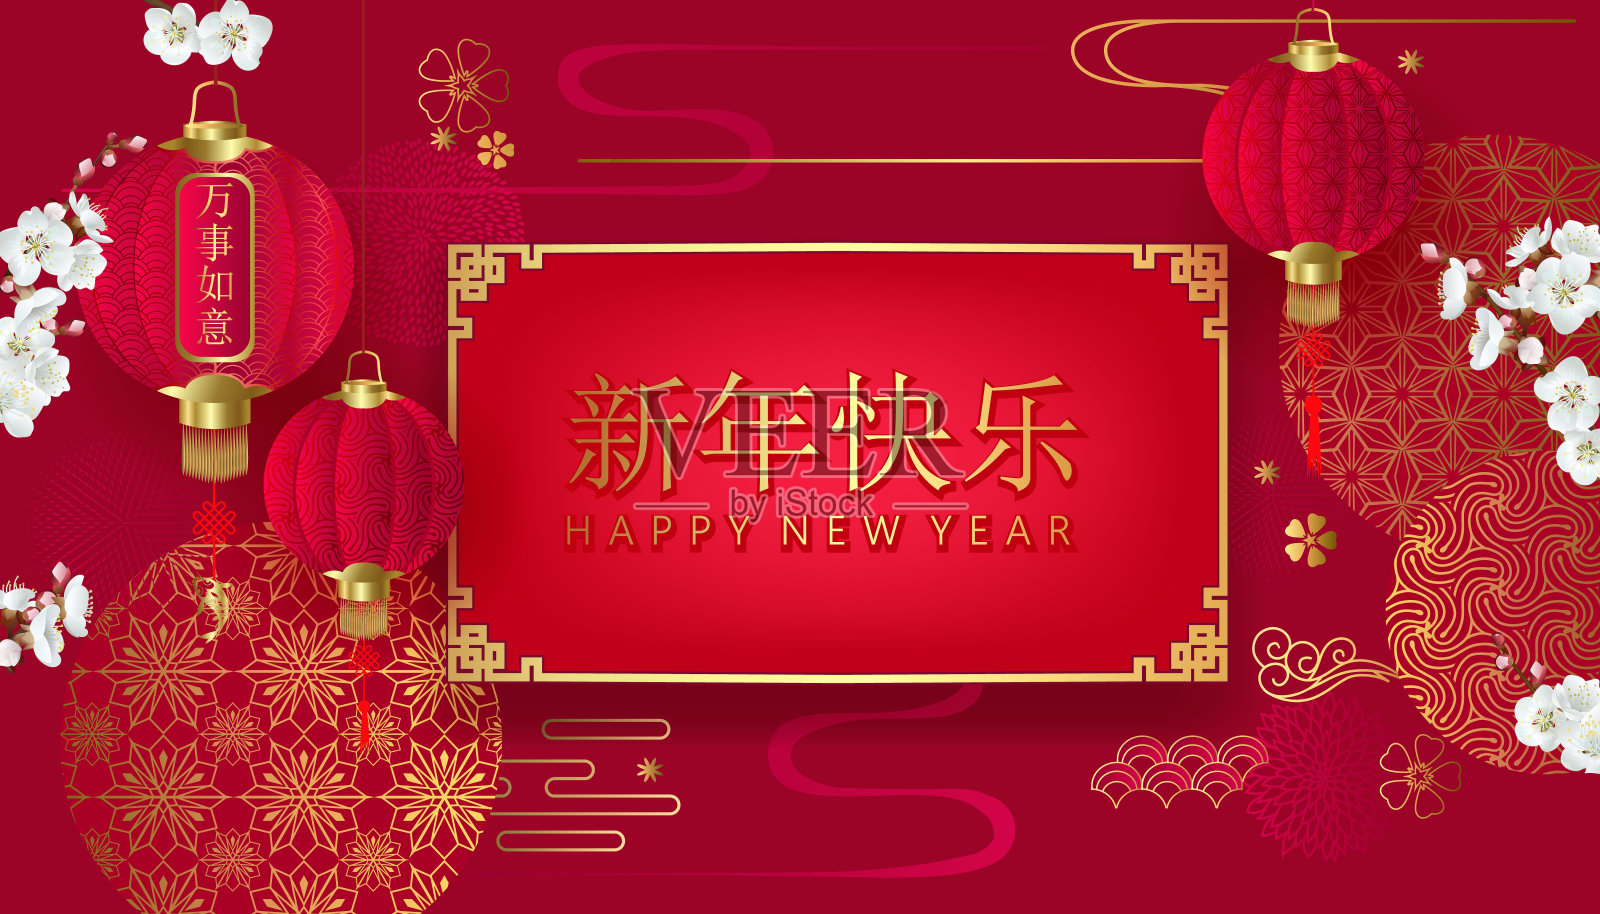 中国传统节日背景装饰为节日横幅设计模板素材